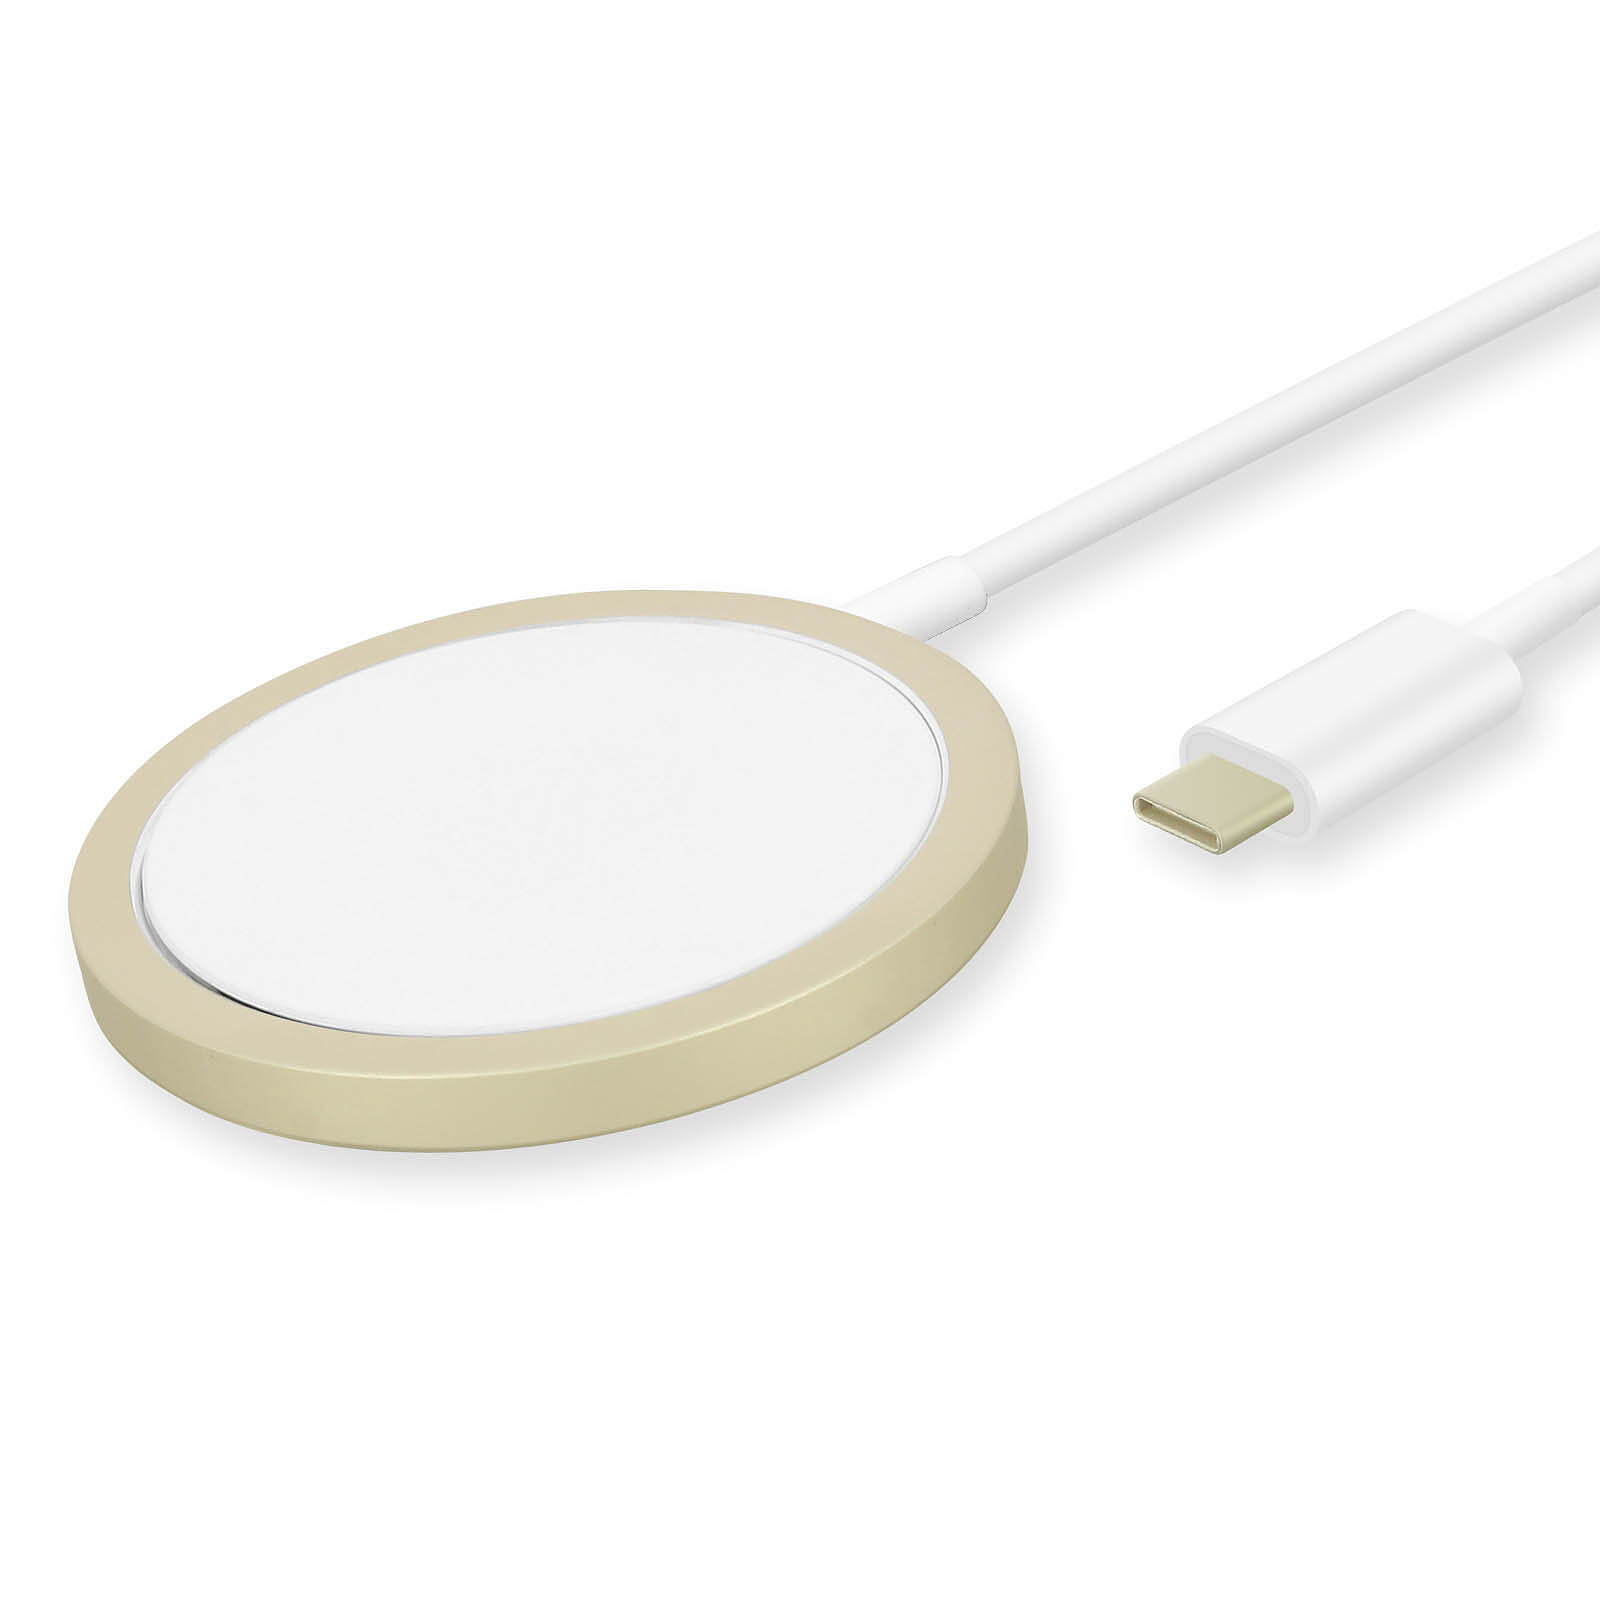 Chargeur magnétique sans fil pour voiture 15W pour Apple MagSafe